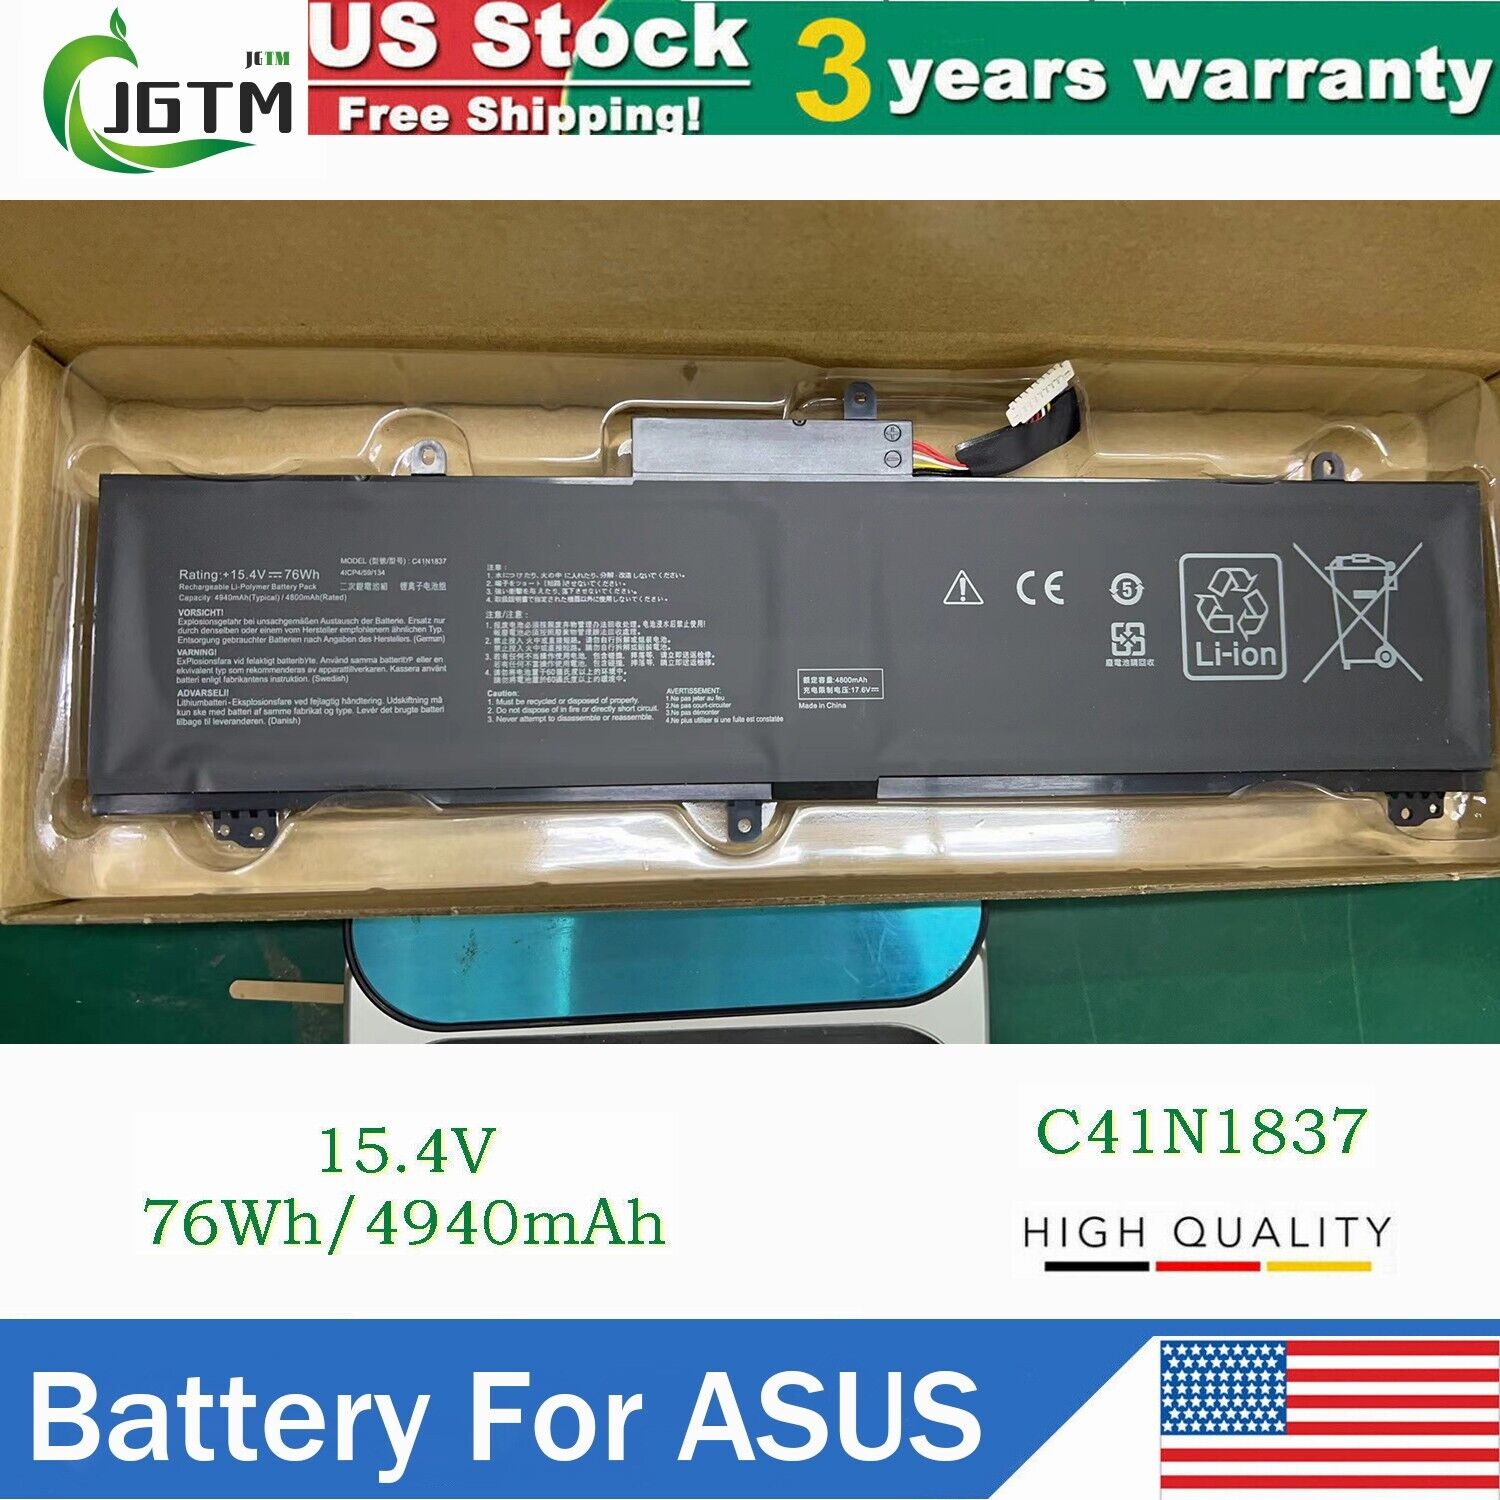 C41N1837 Battery For ASUS ROG Zephyrus G15 GA502 M15 GU502G S15 GX502 76Wh 15.4V